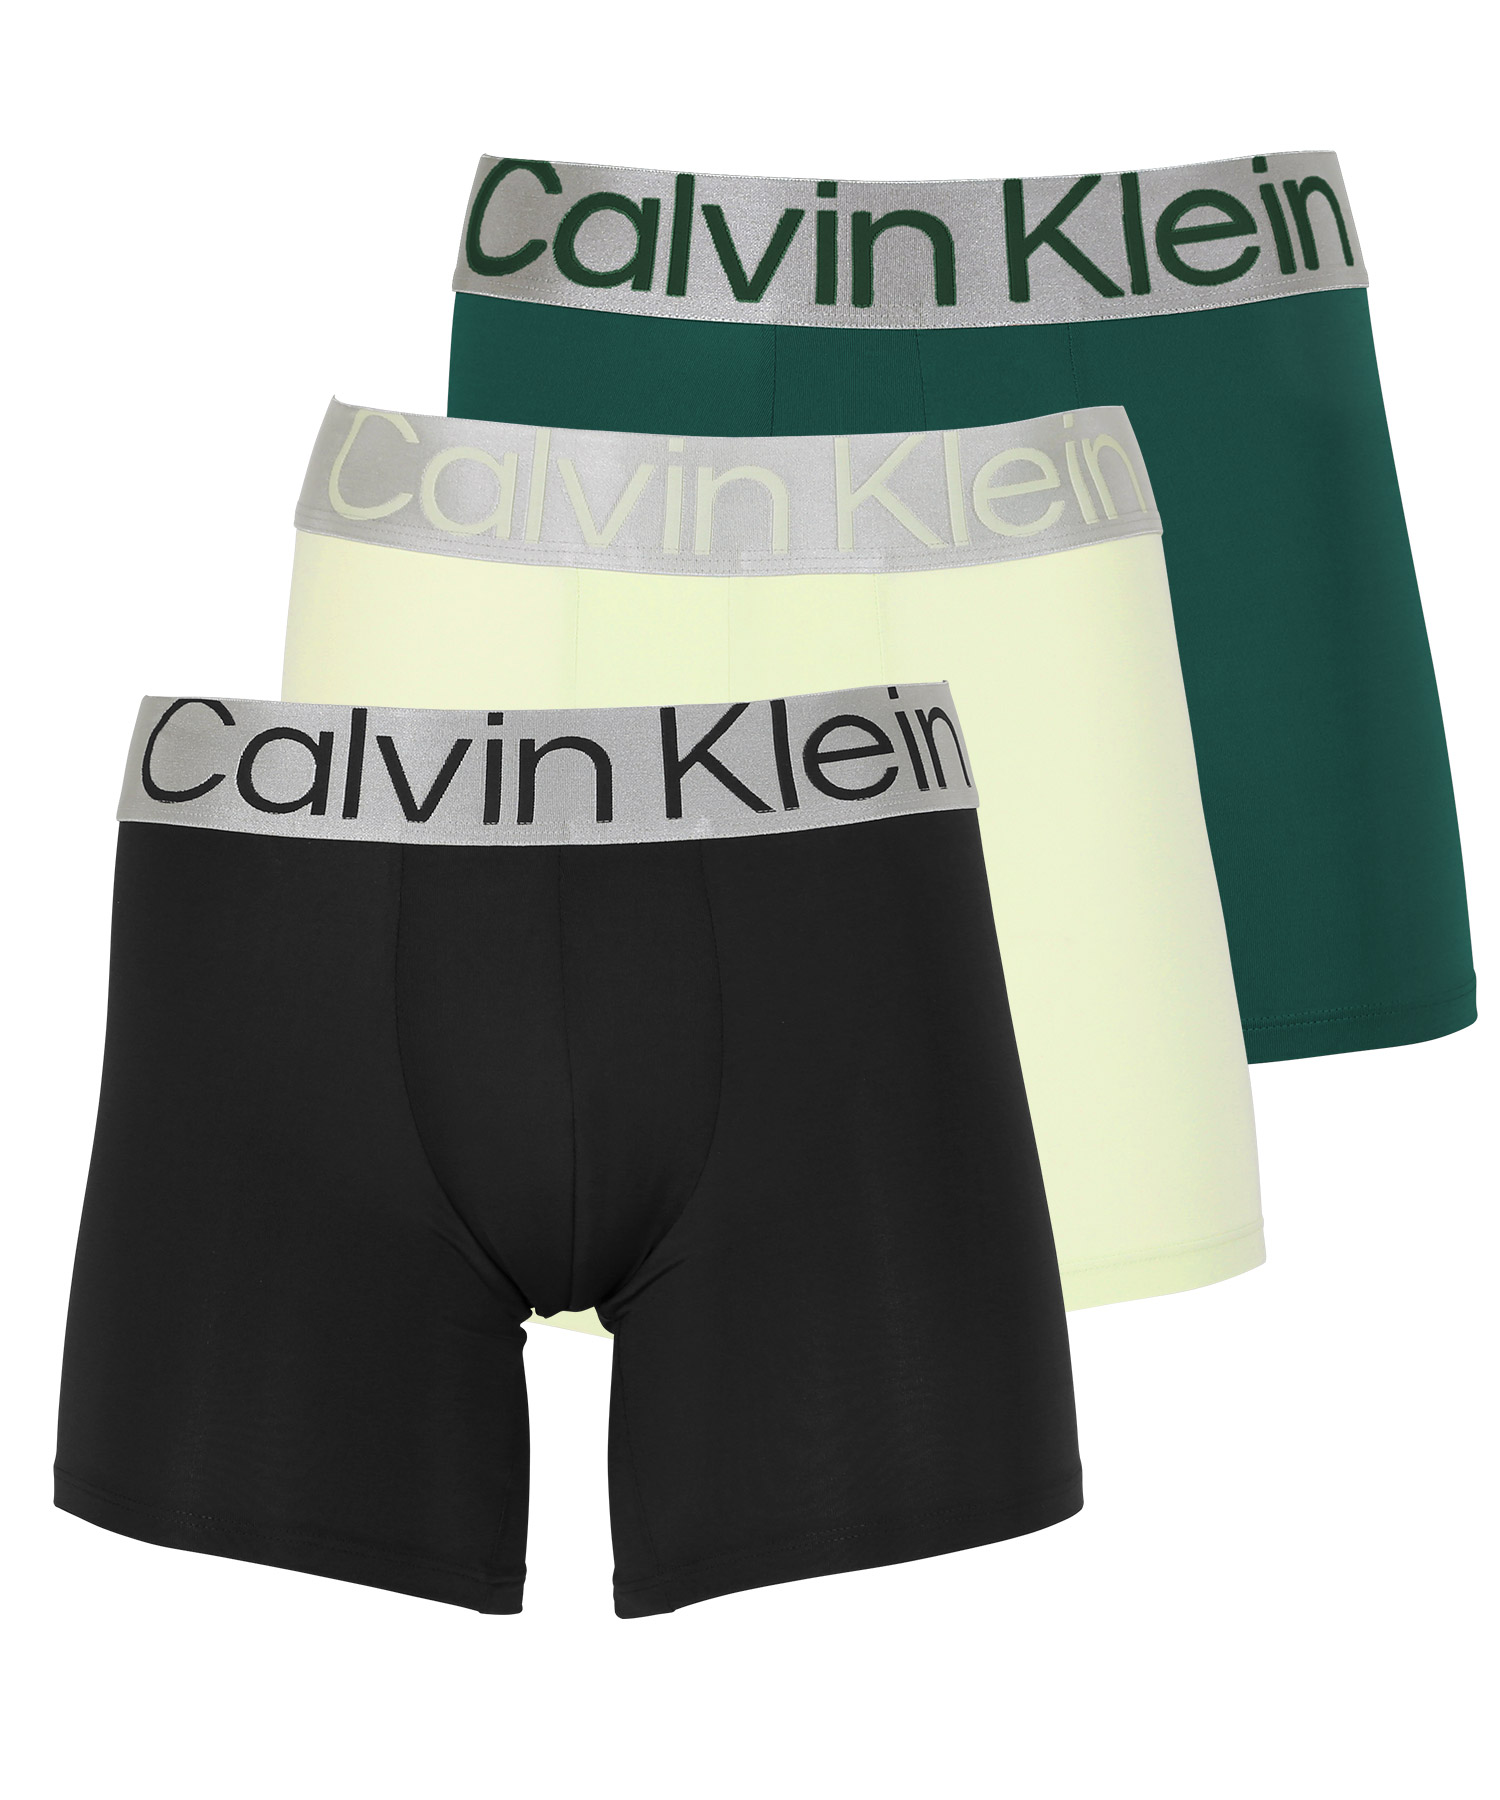 カルバンクライン ボクサーパンツ 3枚セット メンズ ロング Calvin 